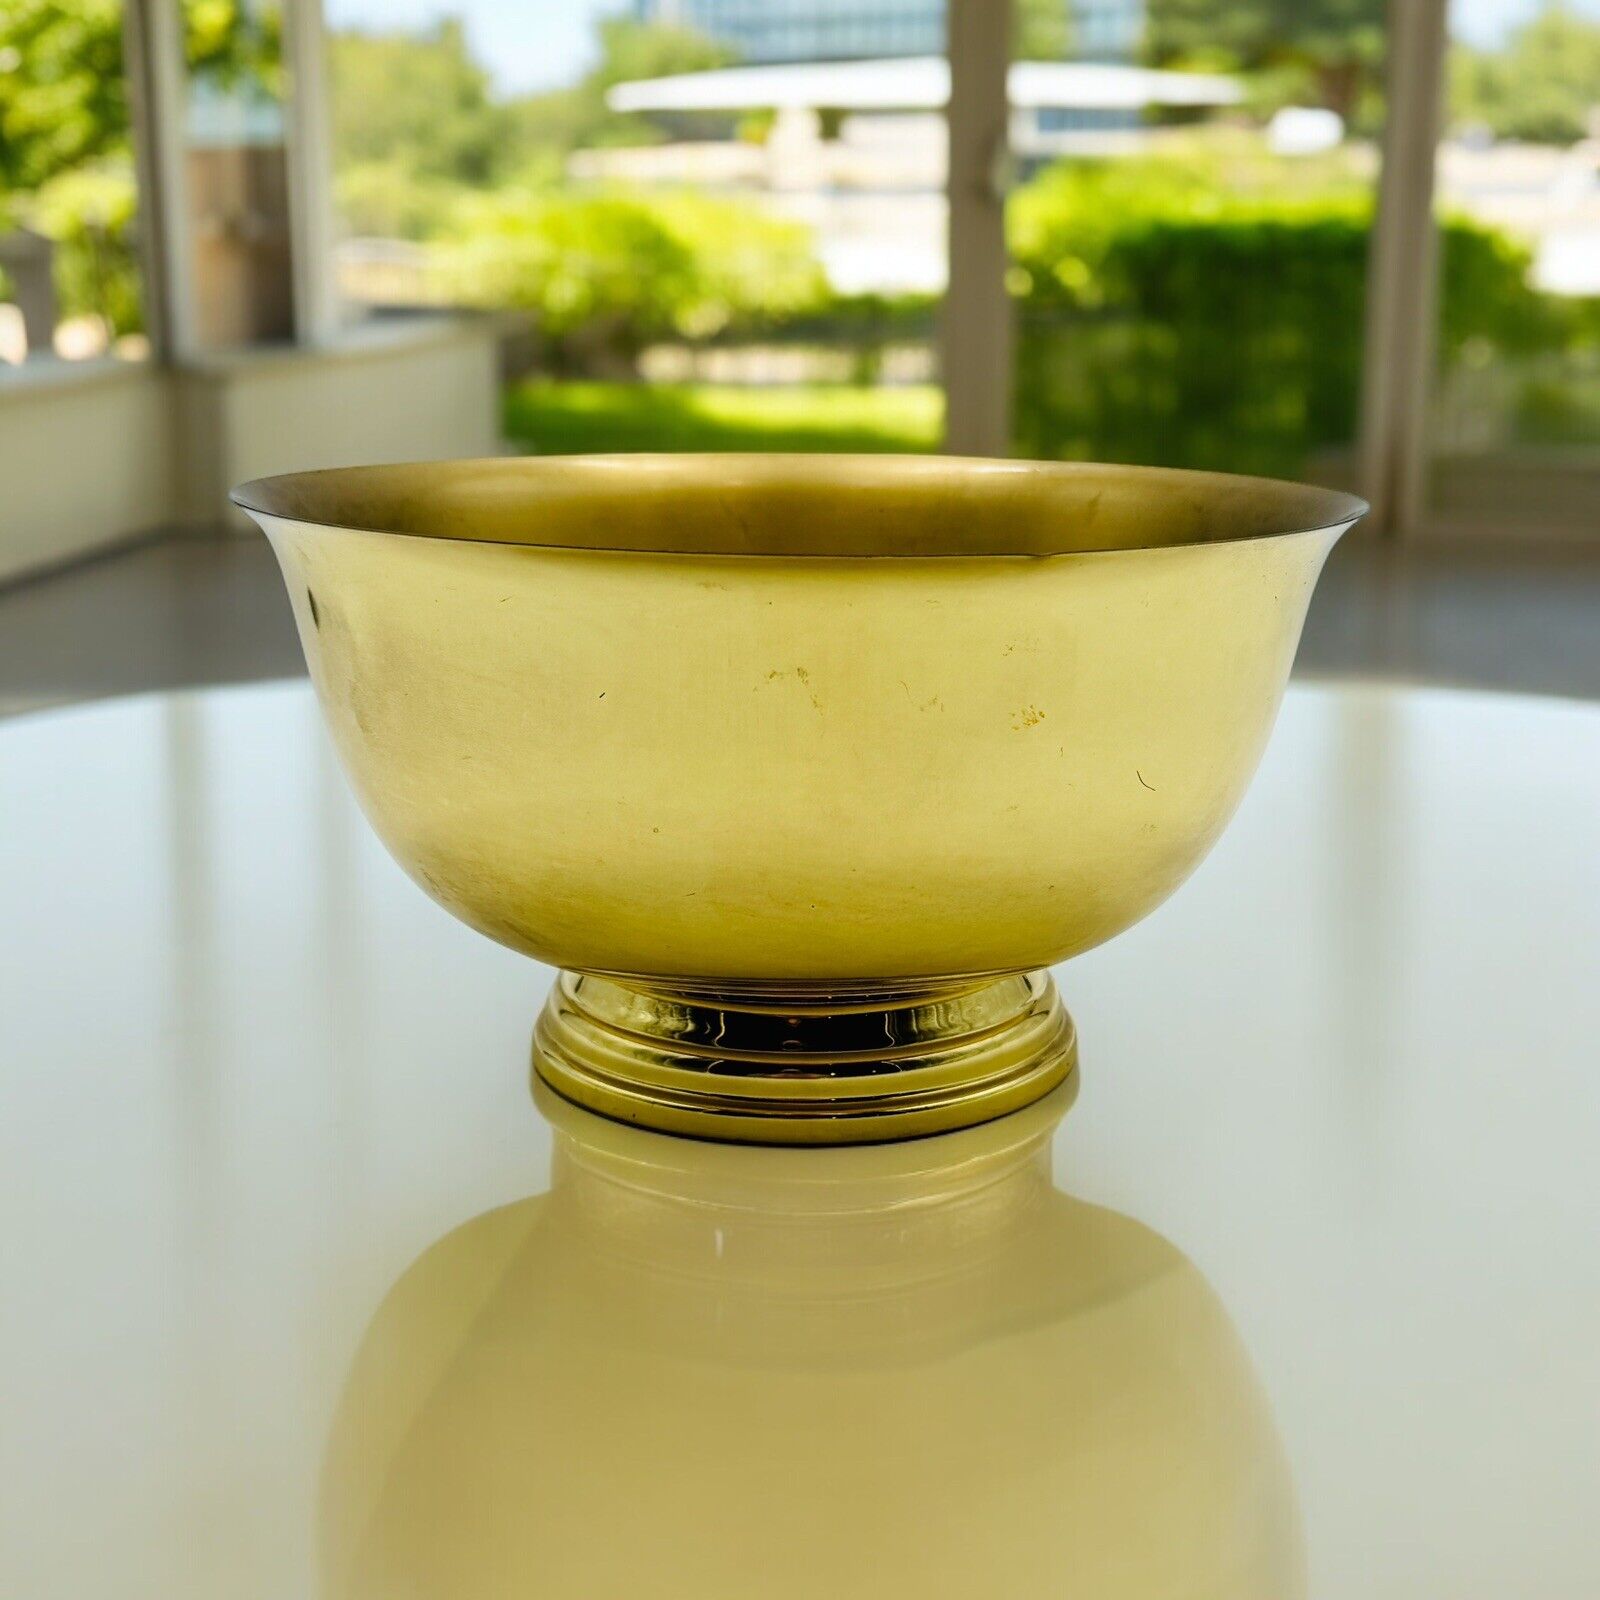 Polished Brass Baldwin Pedestal 9” Bowl For Floral Arrangement Decor Vtg READ